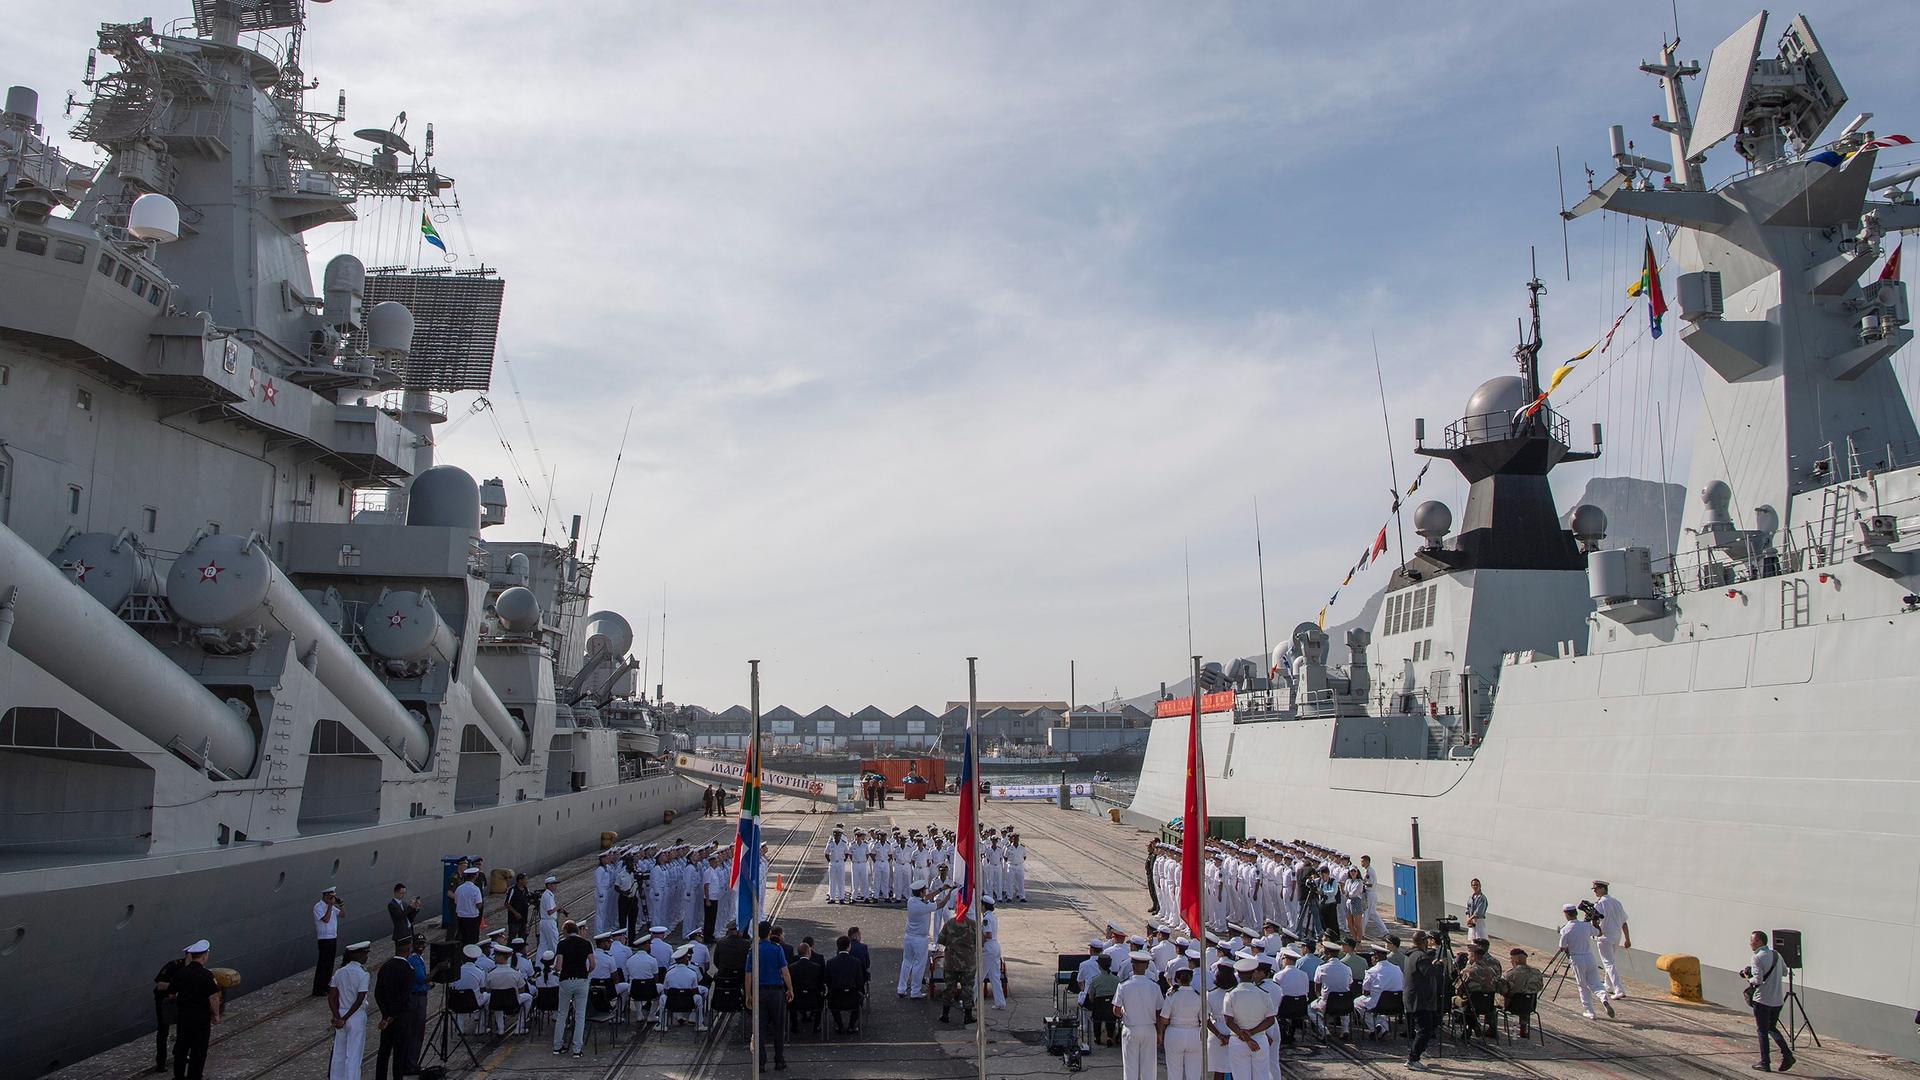 Eröffnung des ersten gemeinsamen Marinemanövers von Südafrika, China und Russland im November 2019 in Kapstadt: zwei Kriegsschiffe, zahlreiche Marinesoldaten und die drei Landesflaggen sind zu sehen.